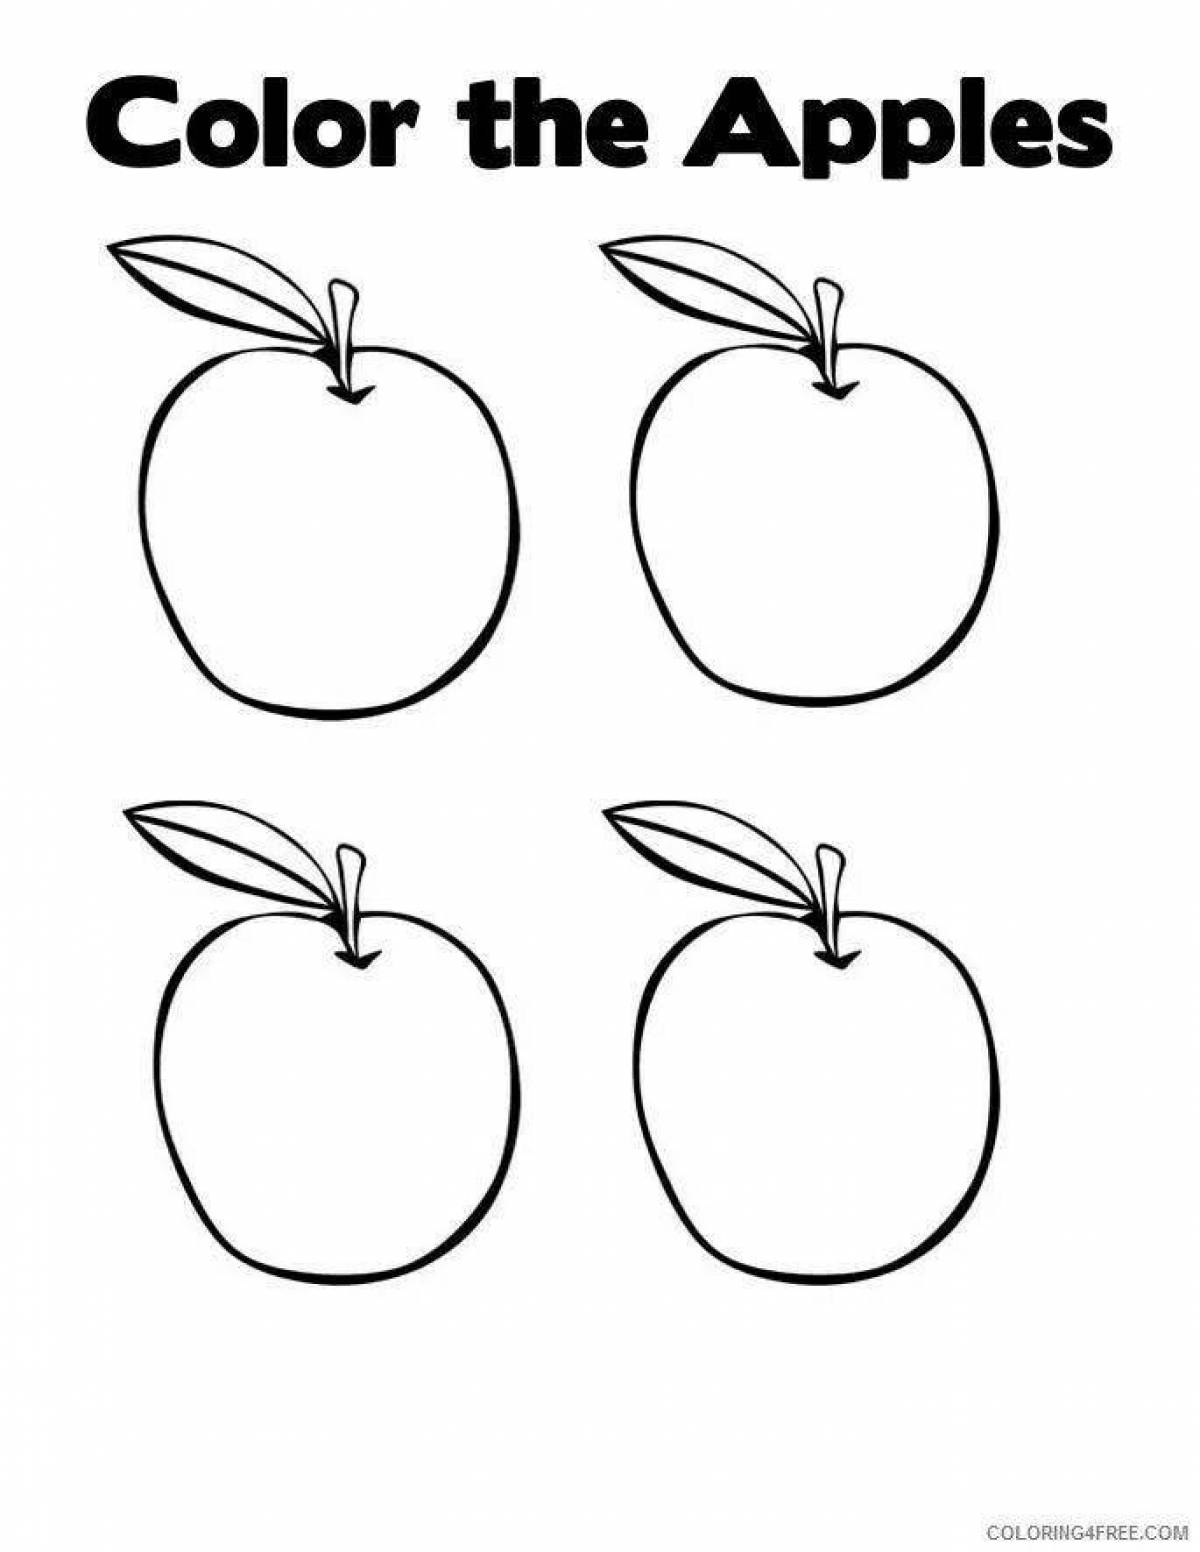 Веселая яблочная раскраска для детей 5-6 лет